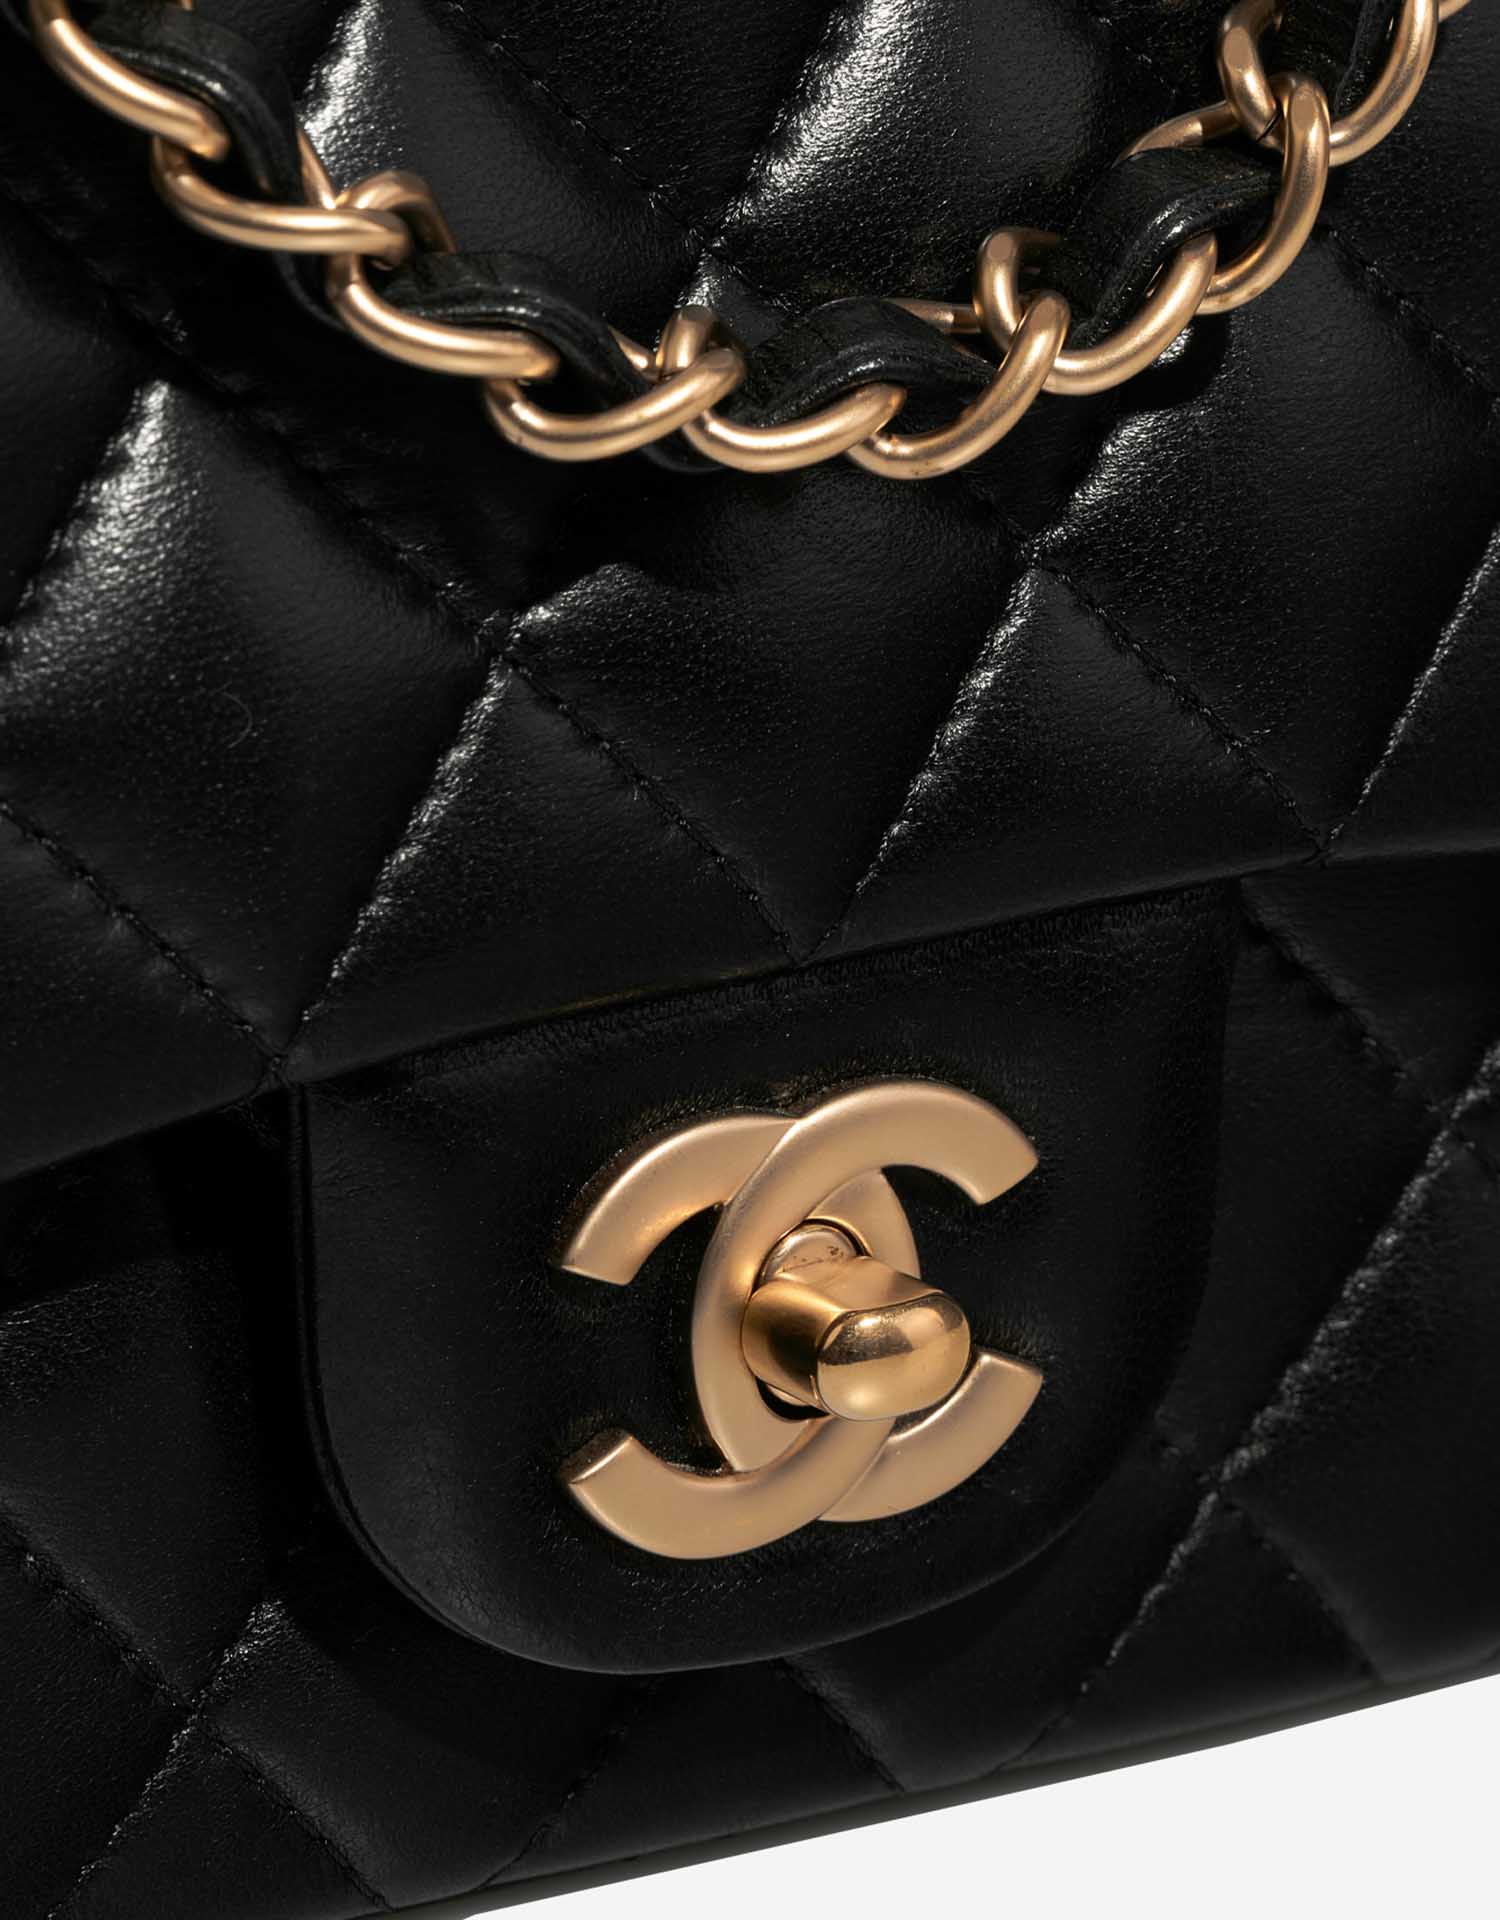 Chanel Timeless MiniRectangular Black Closing System | Verkaufen Sie Ihre Designer-Tasche auf Saclab.com